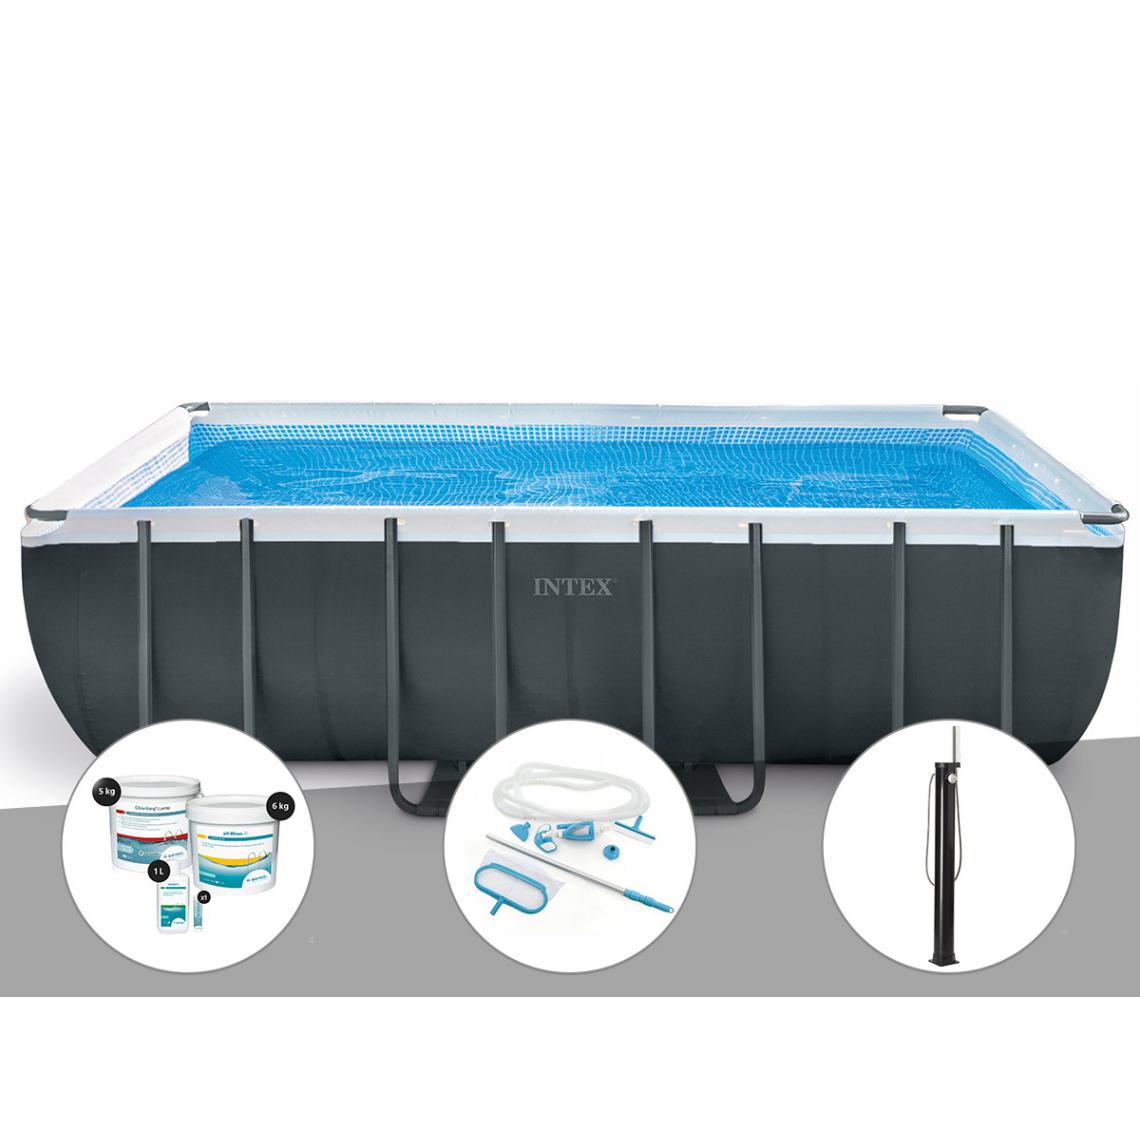 Intex - Kit piscine tubulaire Intex Ultra XTR Frame rectangulaire 5,49 x 2,74 x 1,32 m + Kit de traitement au chlore + Kit d'entretien + Douche solaire - Piscine Tubulaire